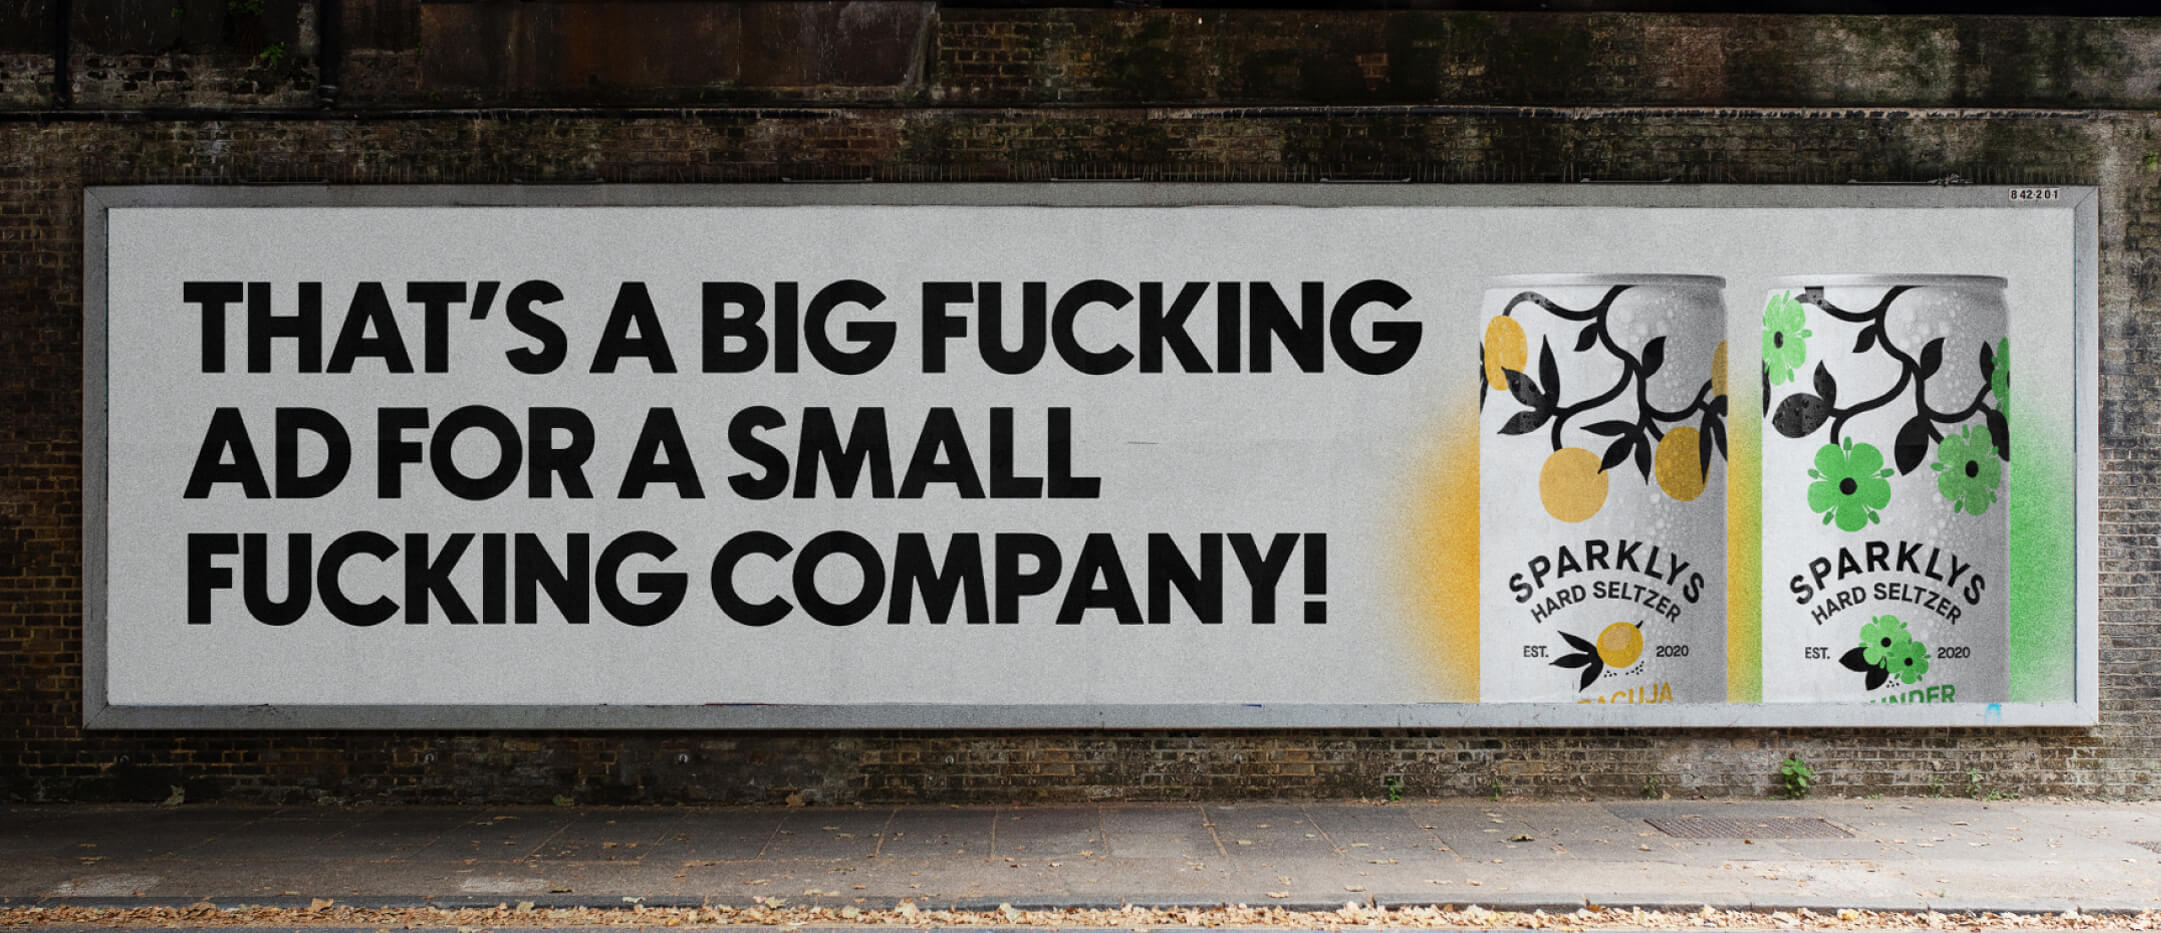 Sparklys Hard Seltzer Billboard Plakat/Poster in Luzern, Schweiz mit einem grossen Schriftzug "That's a big fucking ad for a small fucking company!".